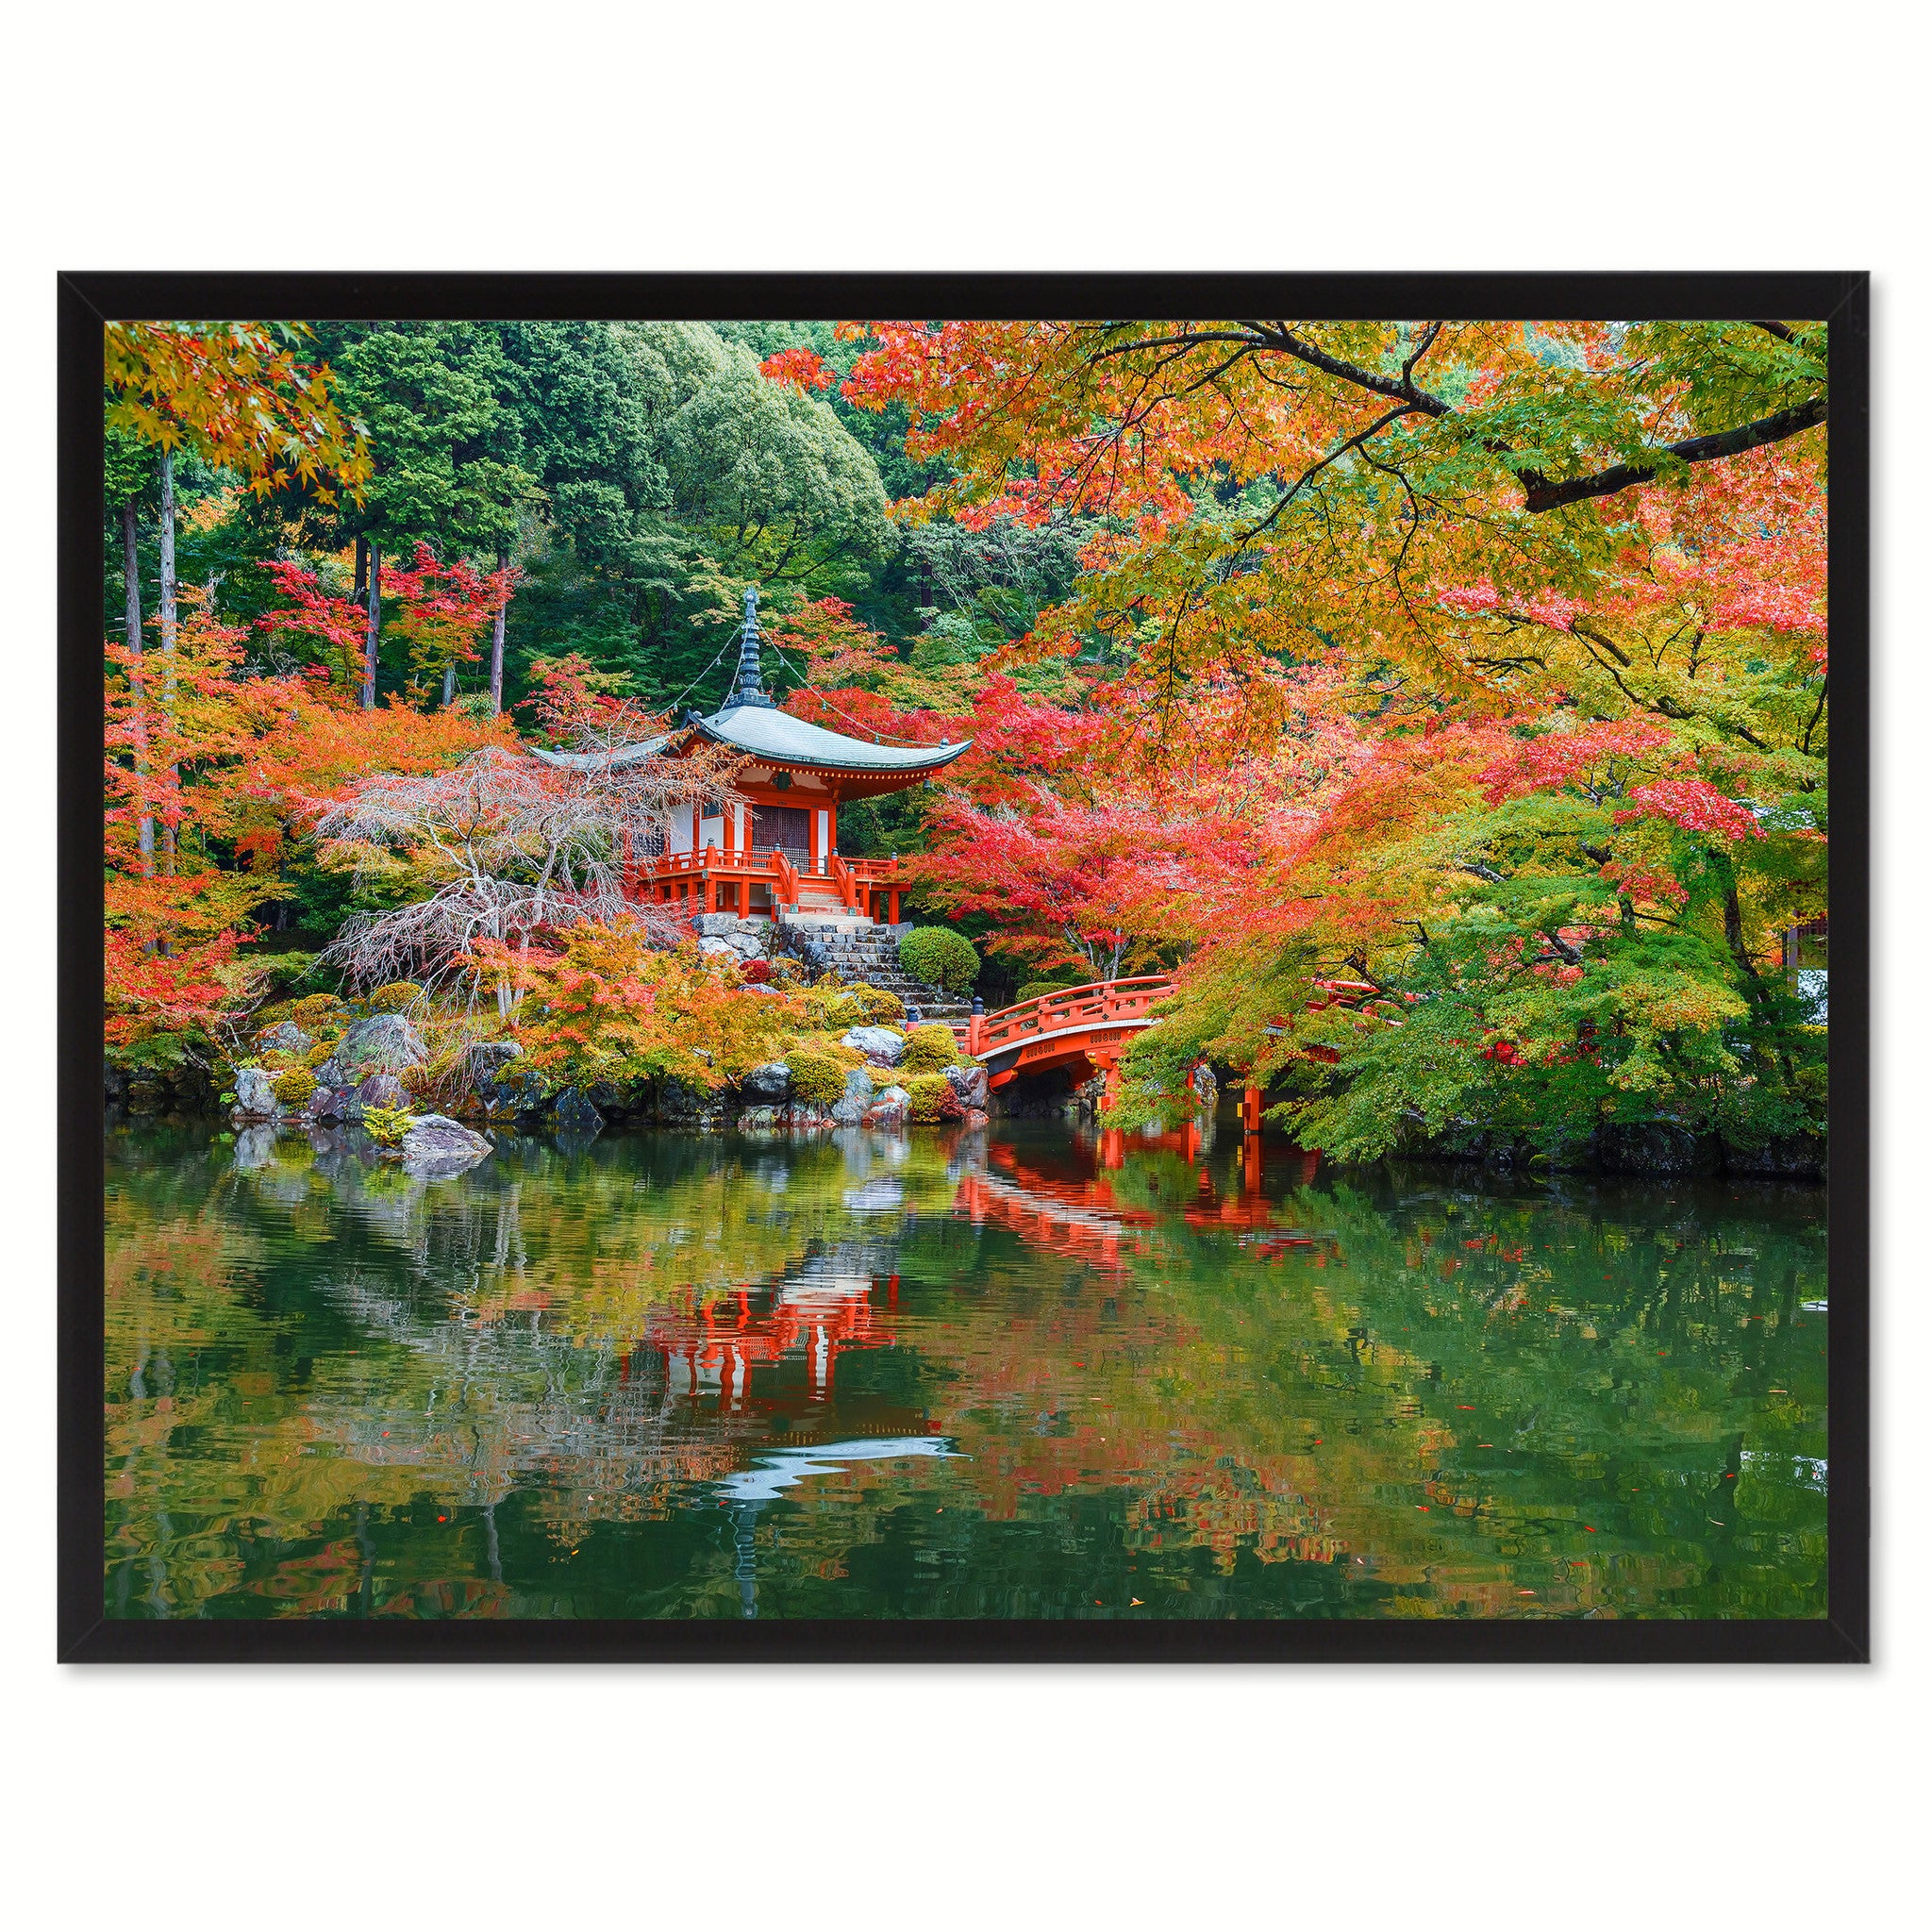 Autumn Daigoji Temple Landscape Photo Canvas Print Pictures Frames Home Décor Wall Art Gifts